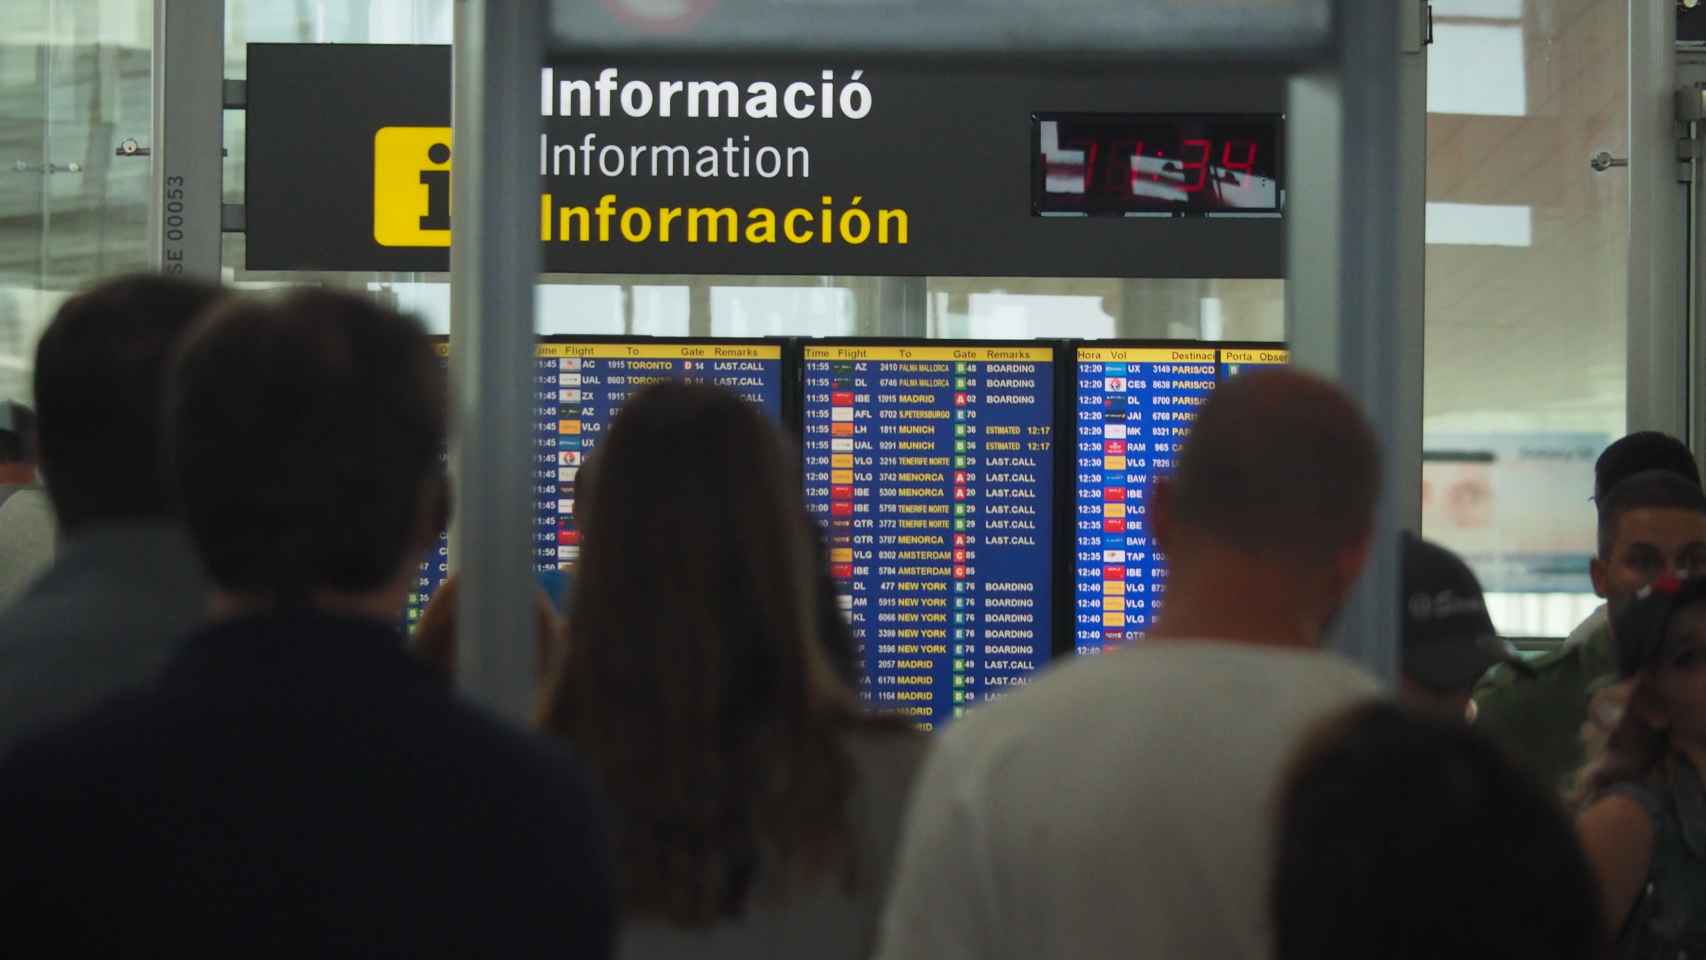 Pasajeros del Aeropuerto de Barcelona consultando los paneles de información / ARNAU MAS